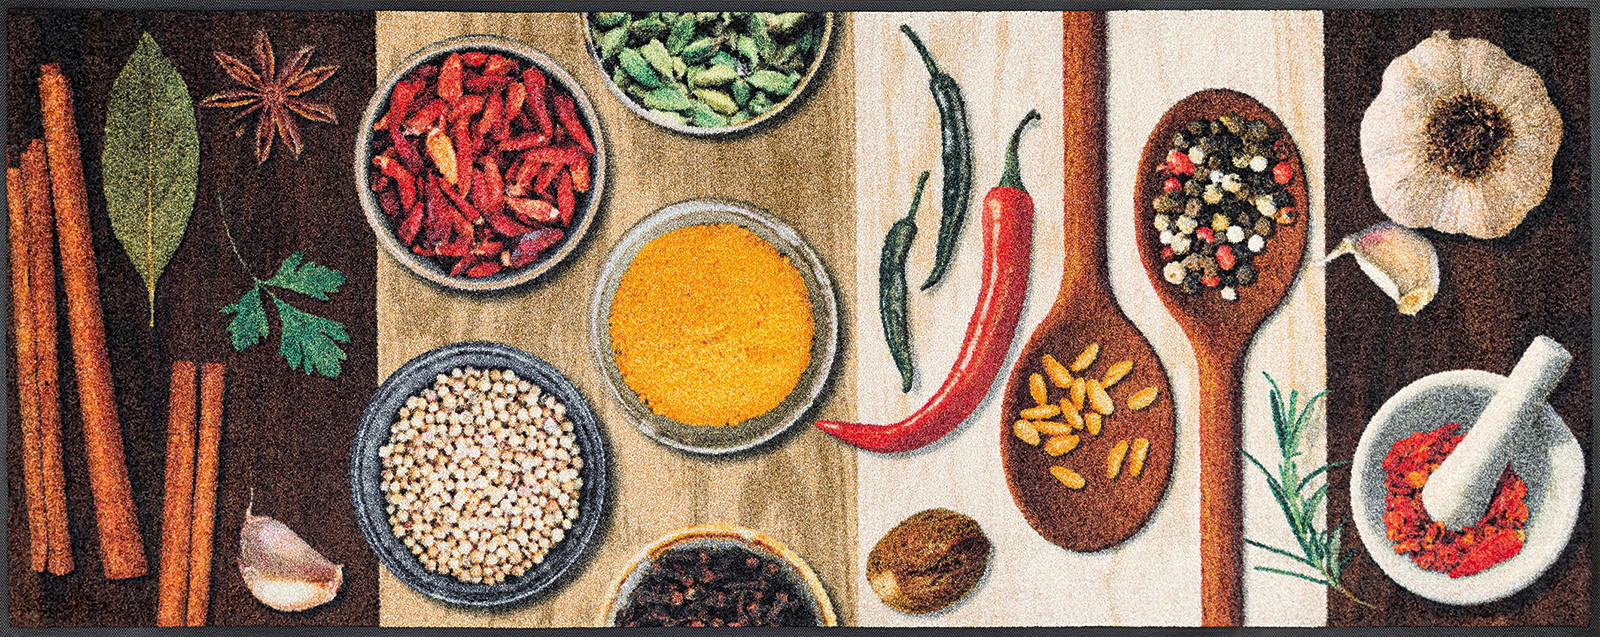 KÜCHENLÄUFER 75/190 cm Hot Spices  - Multicolor, KONVENTIONELL, Kunststoff/Textil (75/190cm) - wash+dry